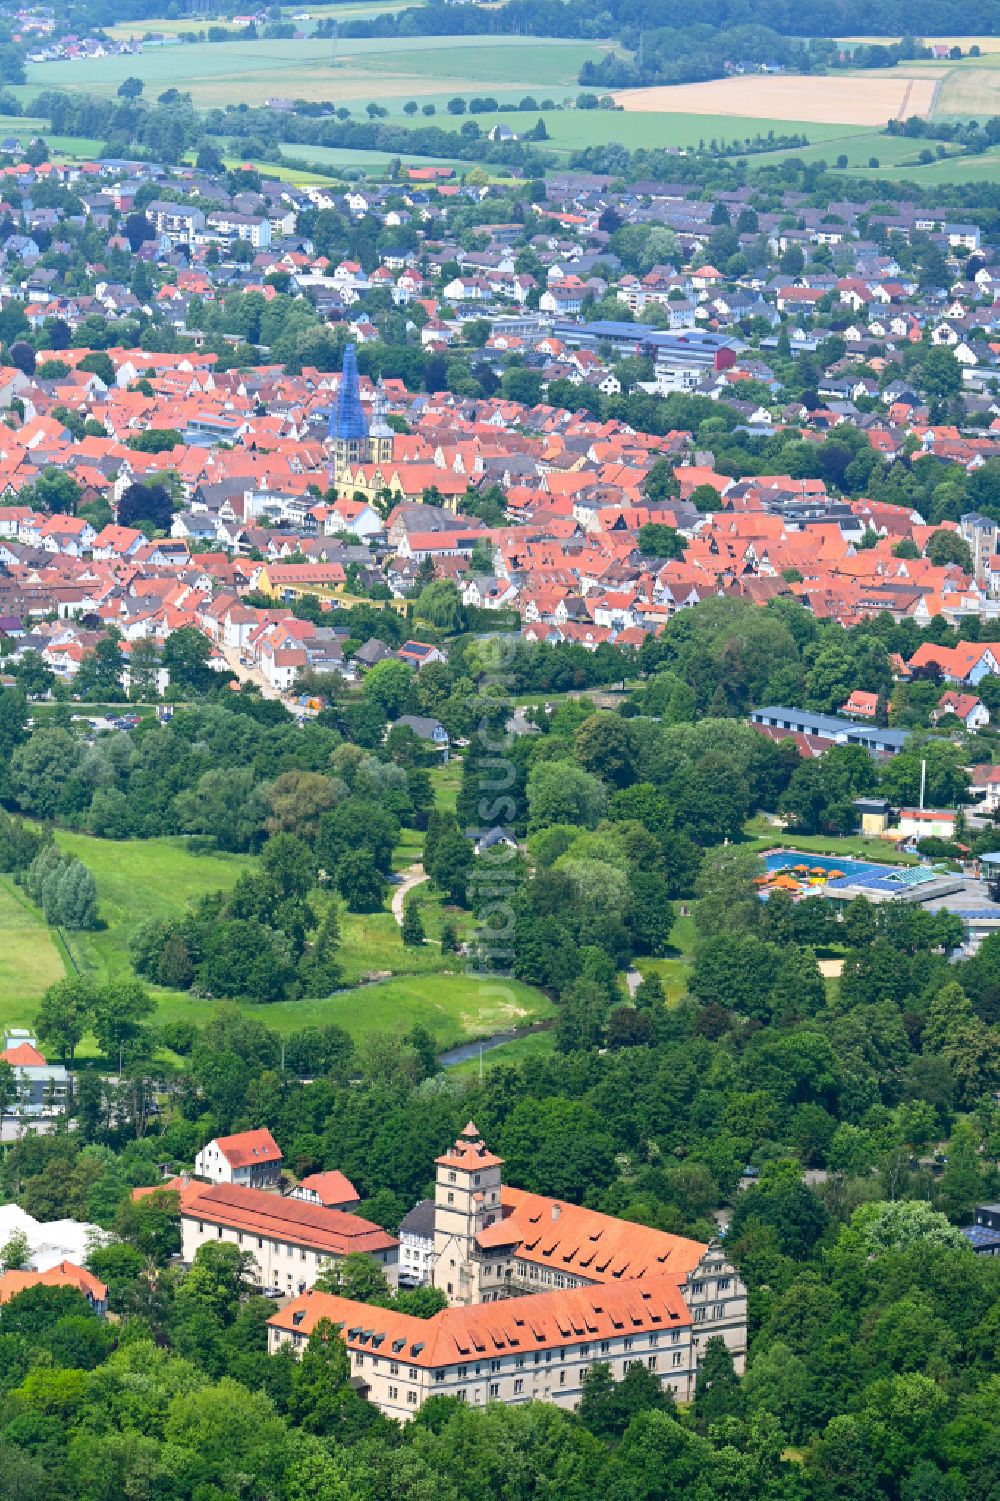 Luftbild Lemgo - Palais des Schloss Brake an der Schloßstraße im Ortsteil Brake in Lemgo im Bundesland Nordrhein-Westfalen, Deutschland